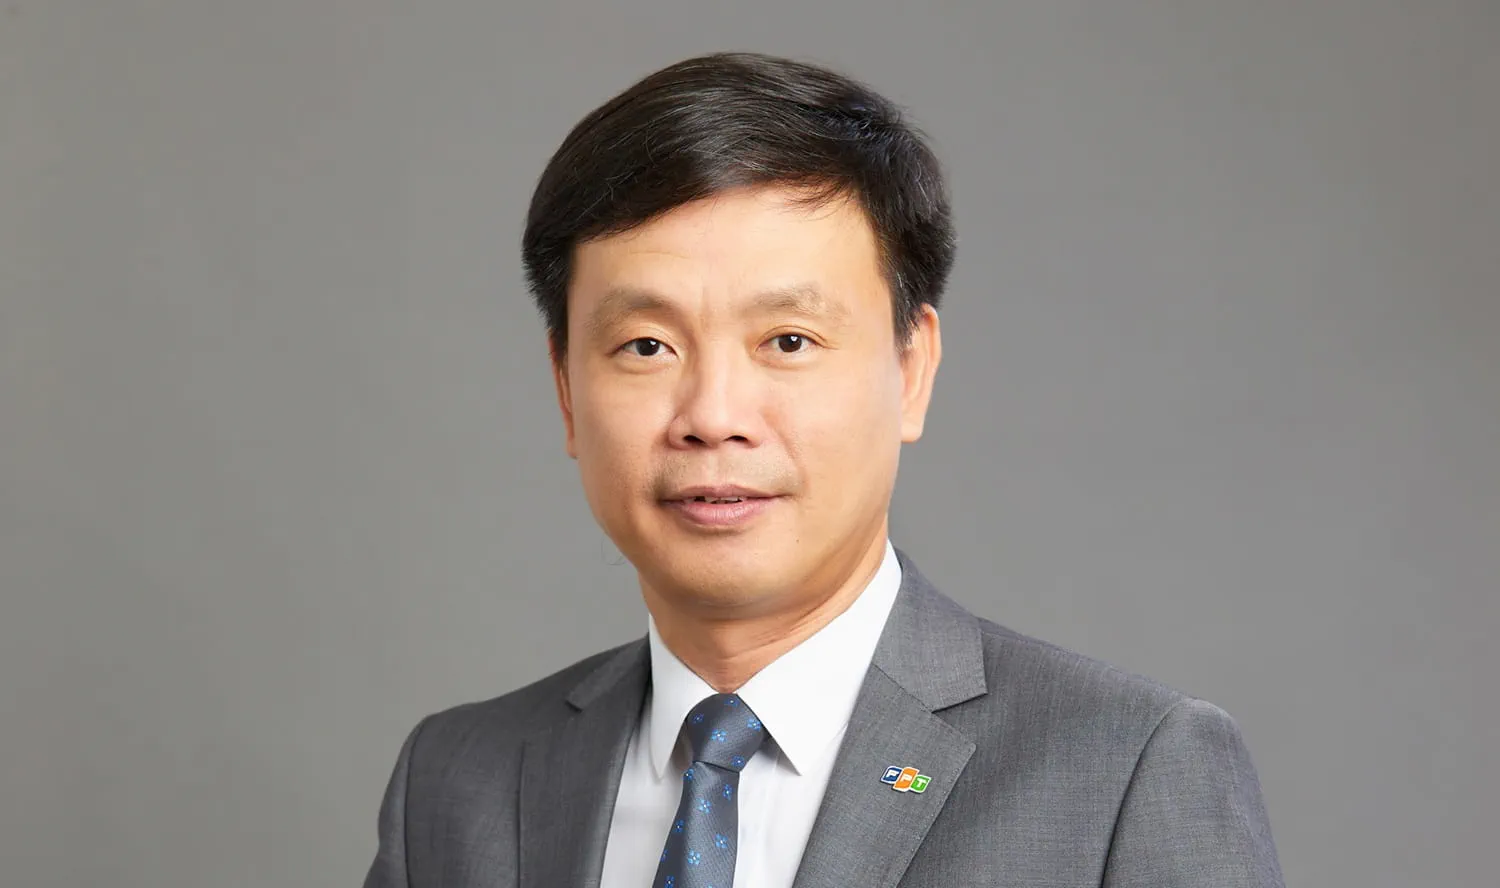 FPT bổ nhiệm ông Phạm Minh Tuấn làm Phó Tổng Giám đốc